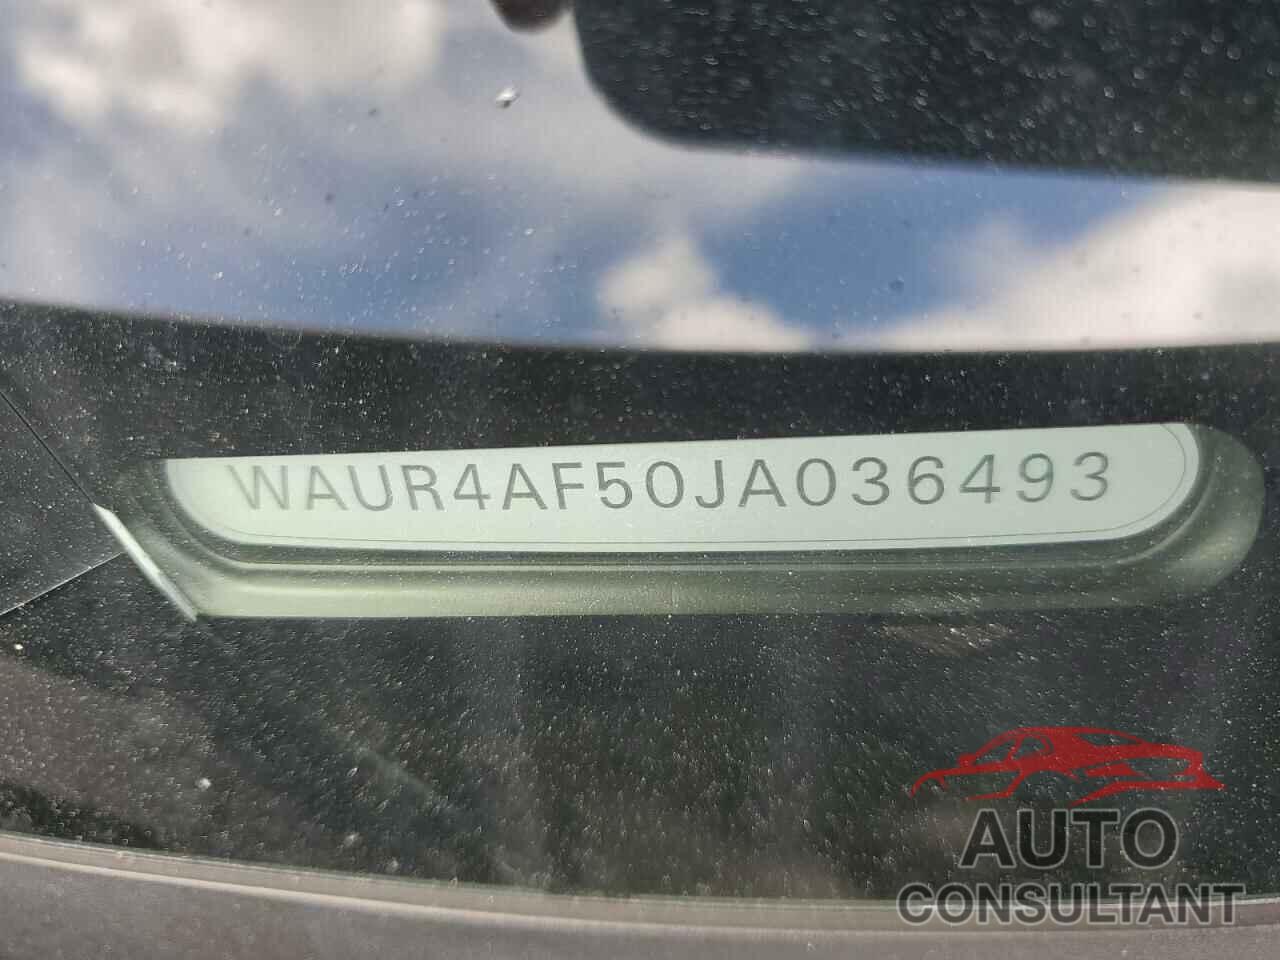 AUDI S5/RS5 2018 - WAUR4AF50JA036493